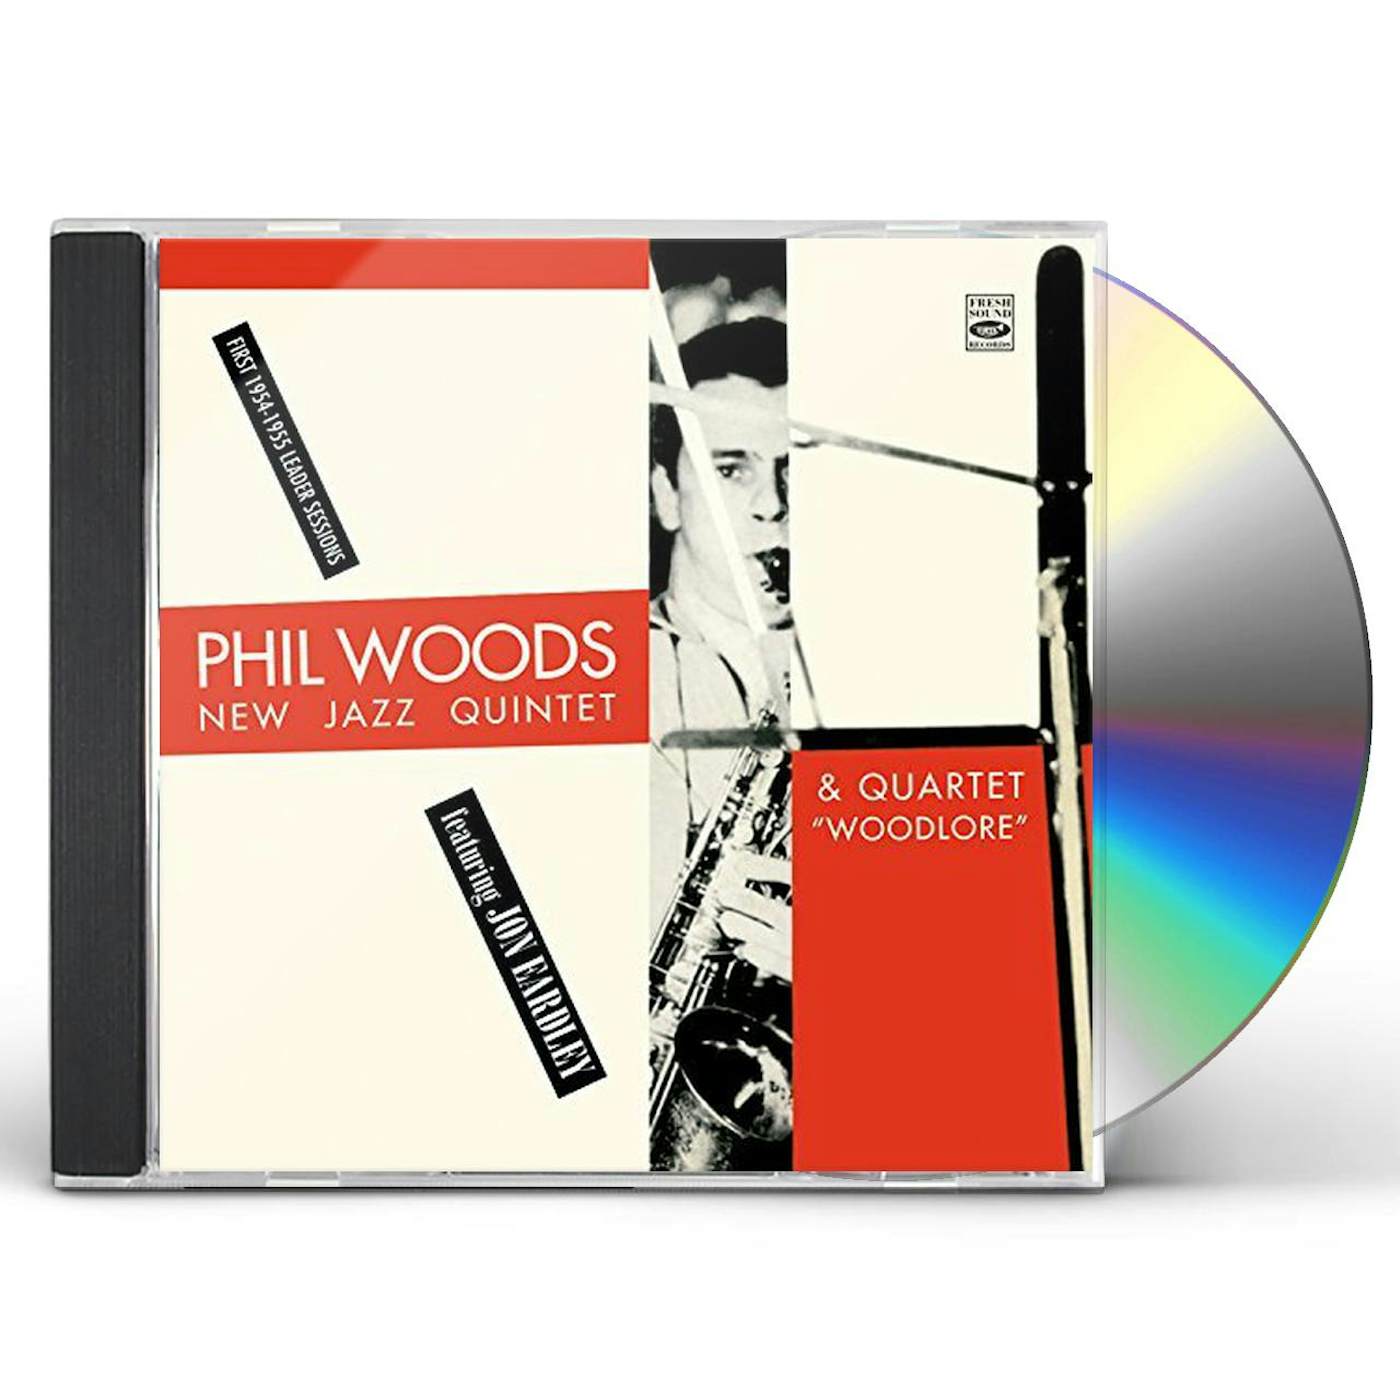 Phil Woods NEW JAZZ QUINTET & QUARTET CD